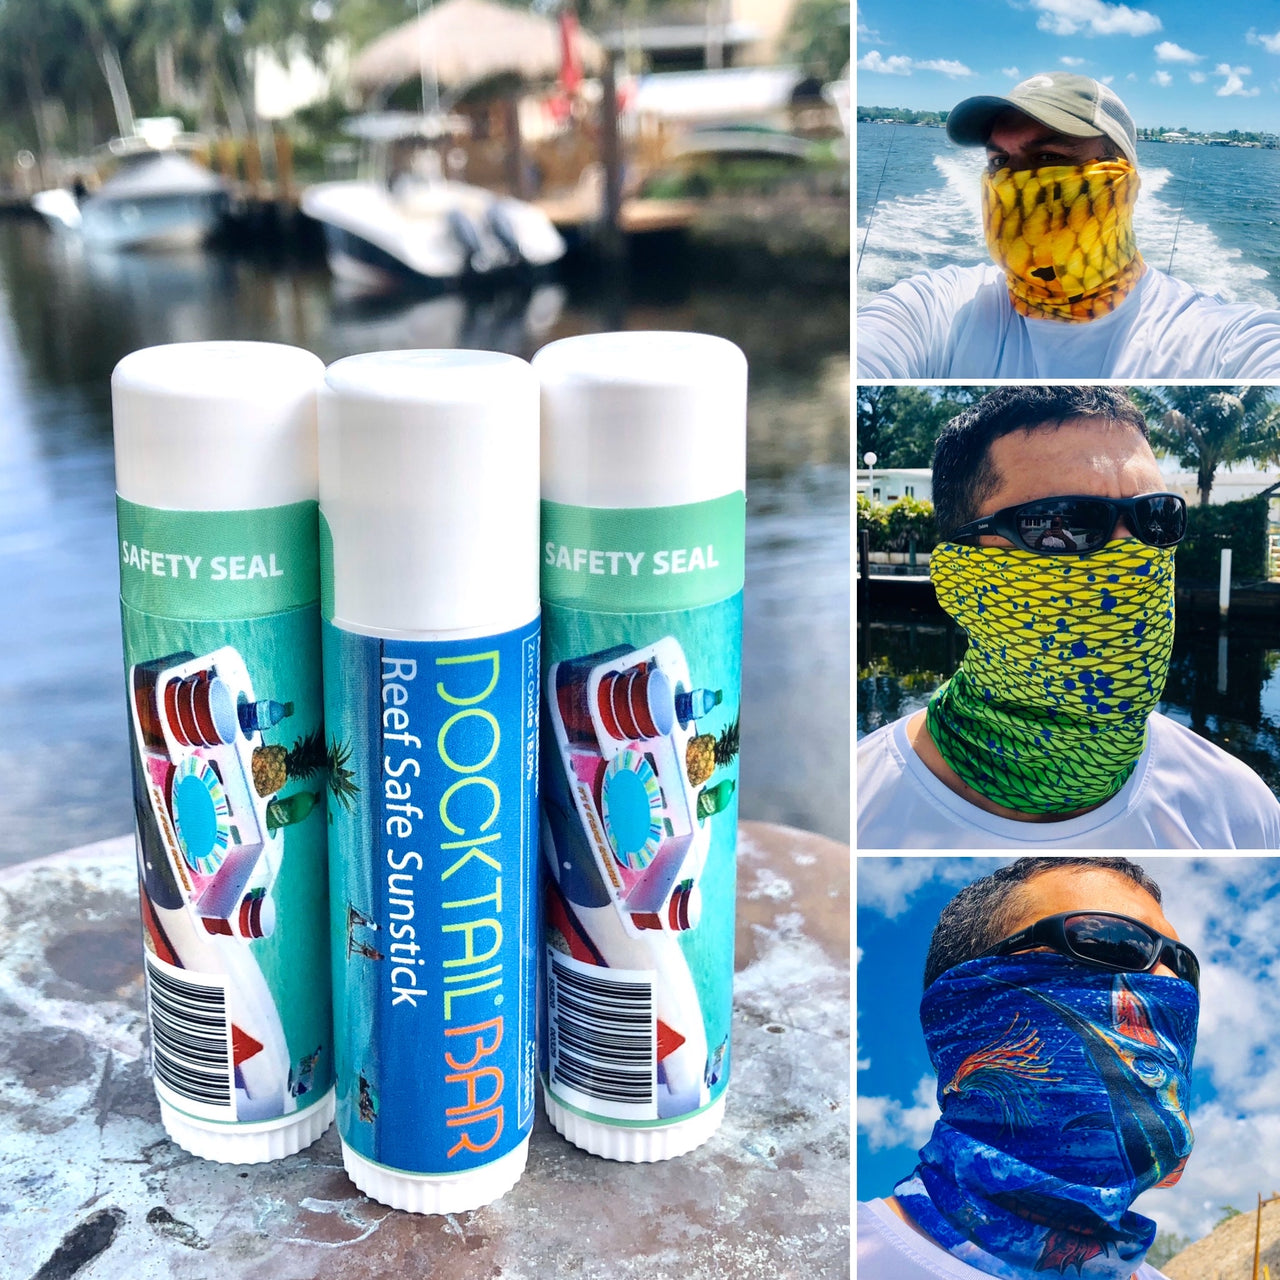 Sunshield Bundle Package - 3 UV Protective Face Shields + 3 Tubes of Docktail Bar's Reef Safe Sunstick